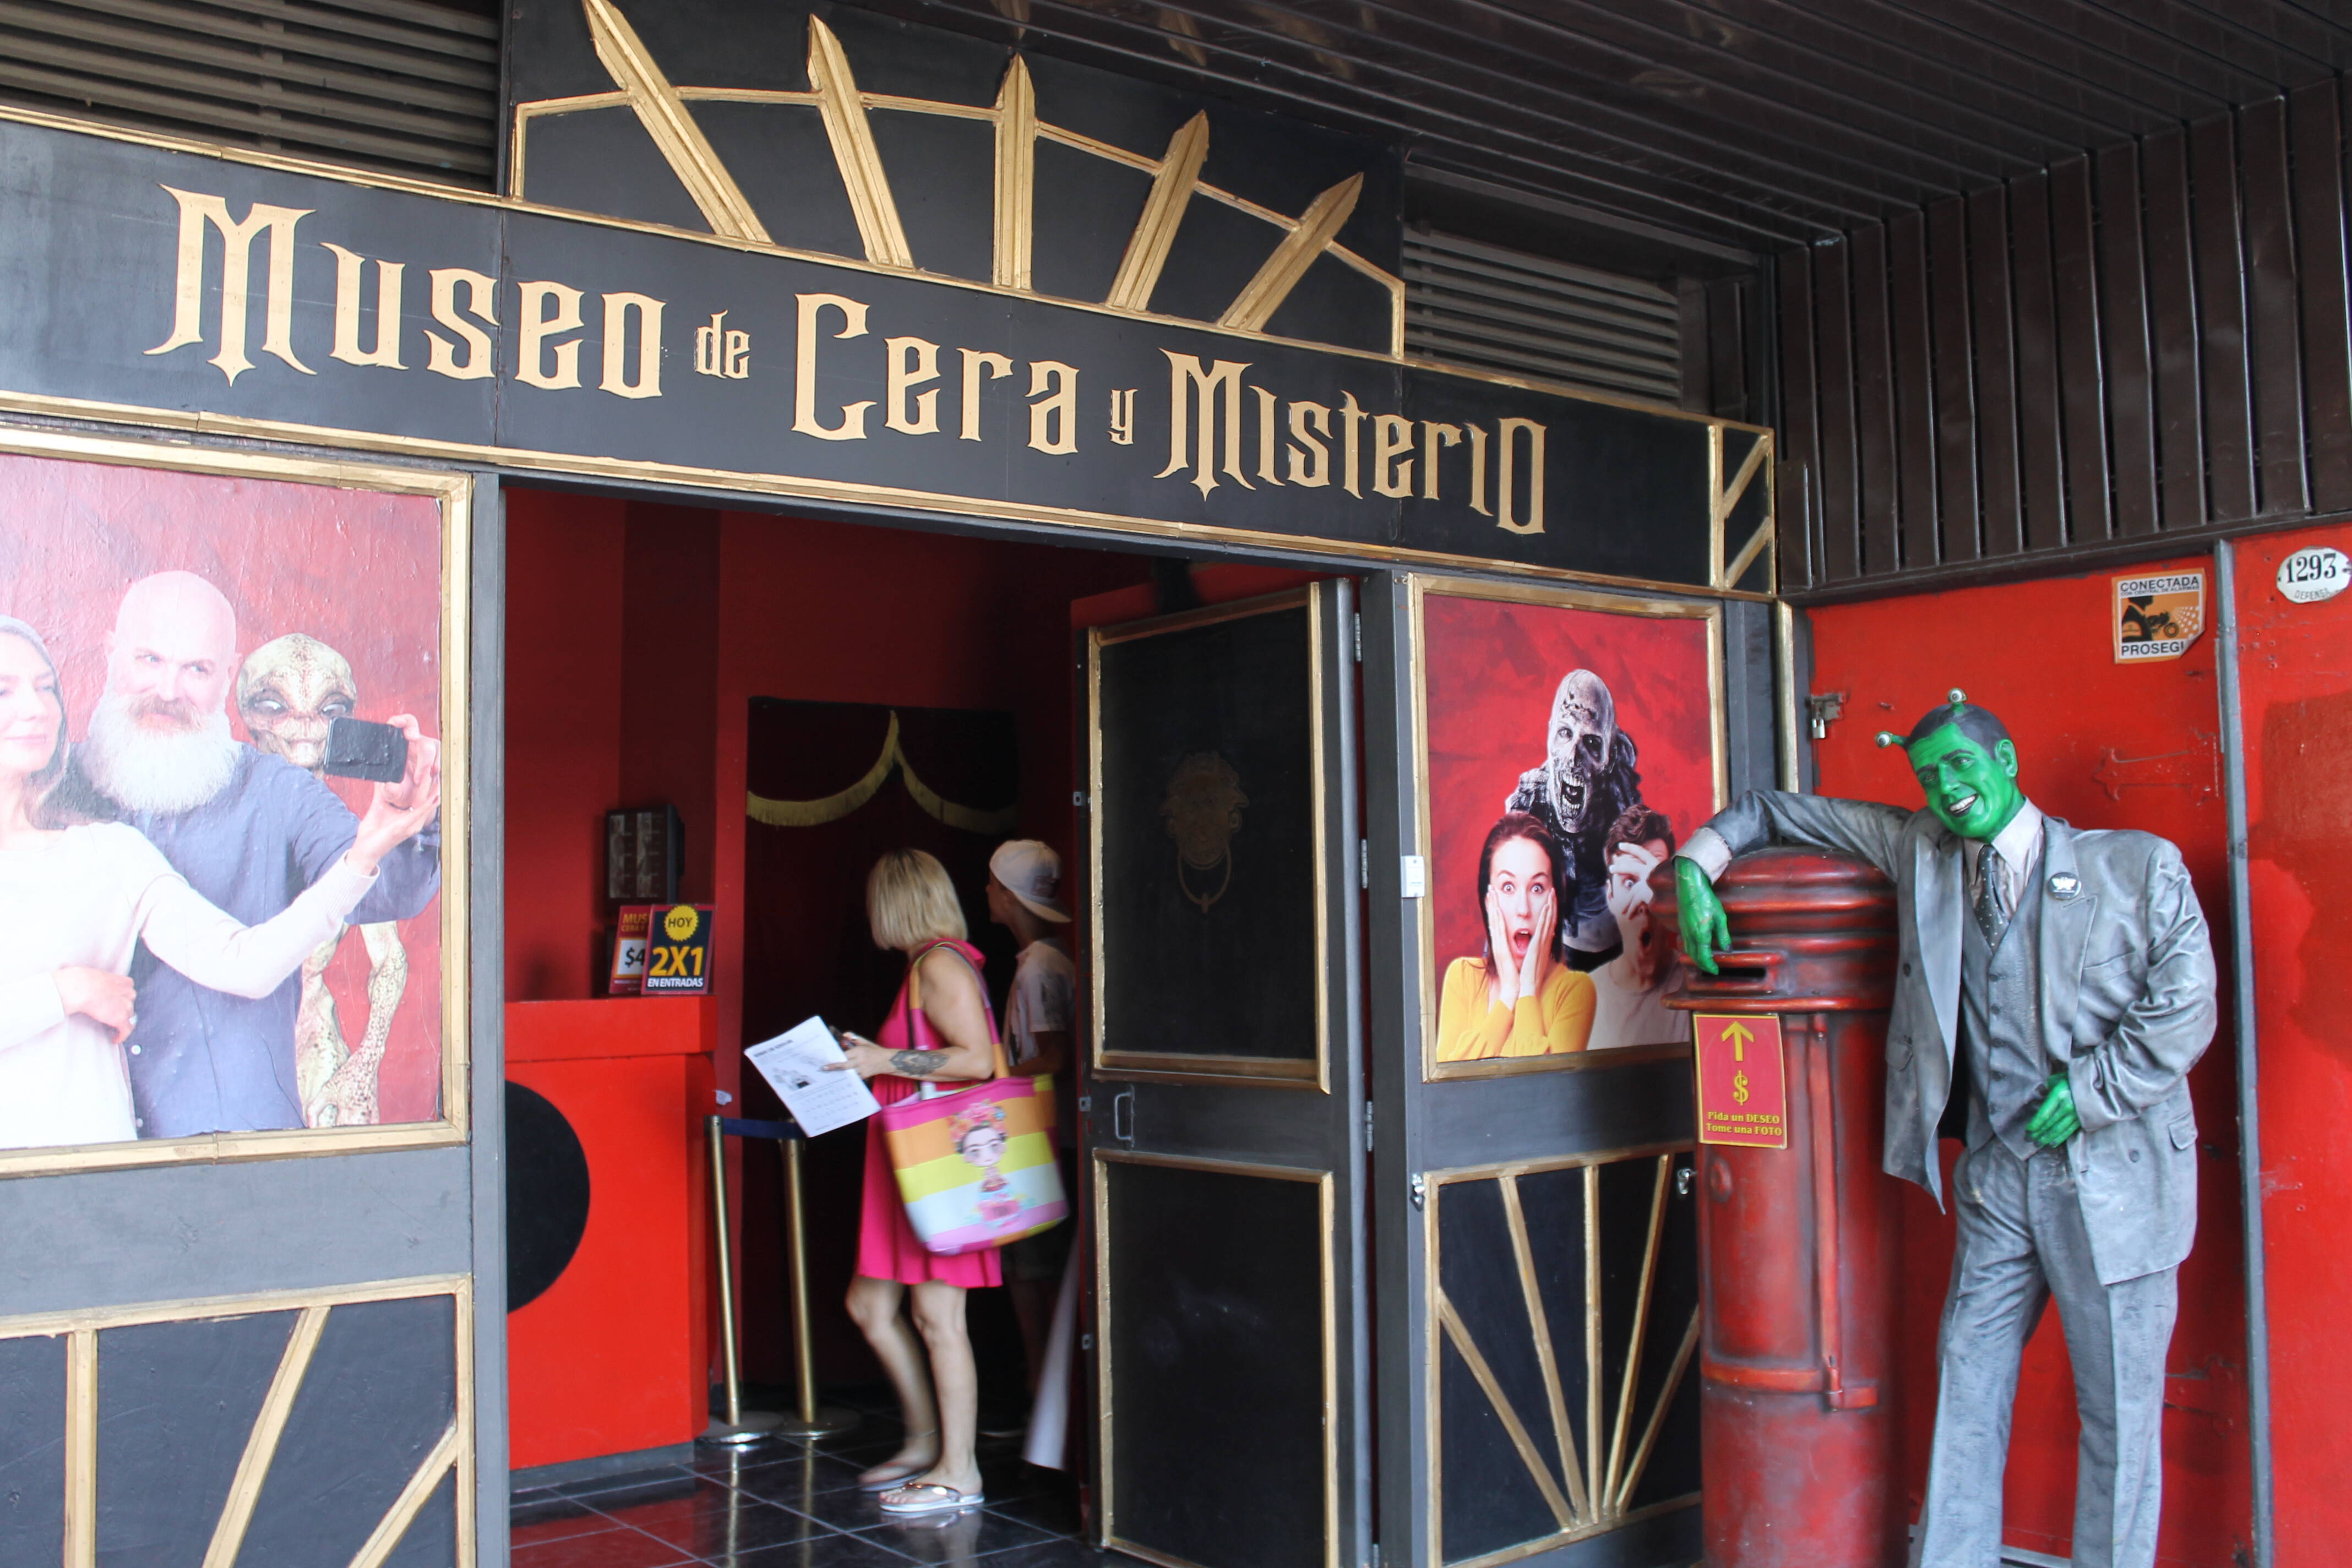 O museu de cera e mistério em San Telmo é bem escondido, mas promete grandes sustos. Foto: Flavia Matos/ IG